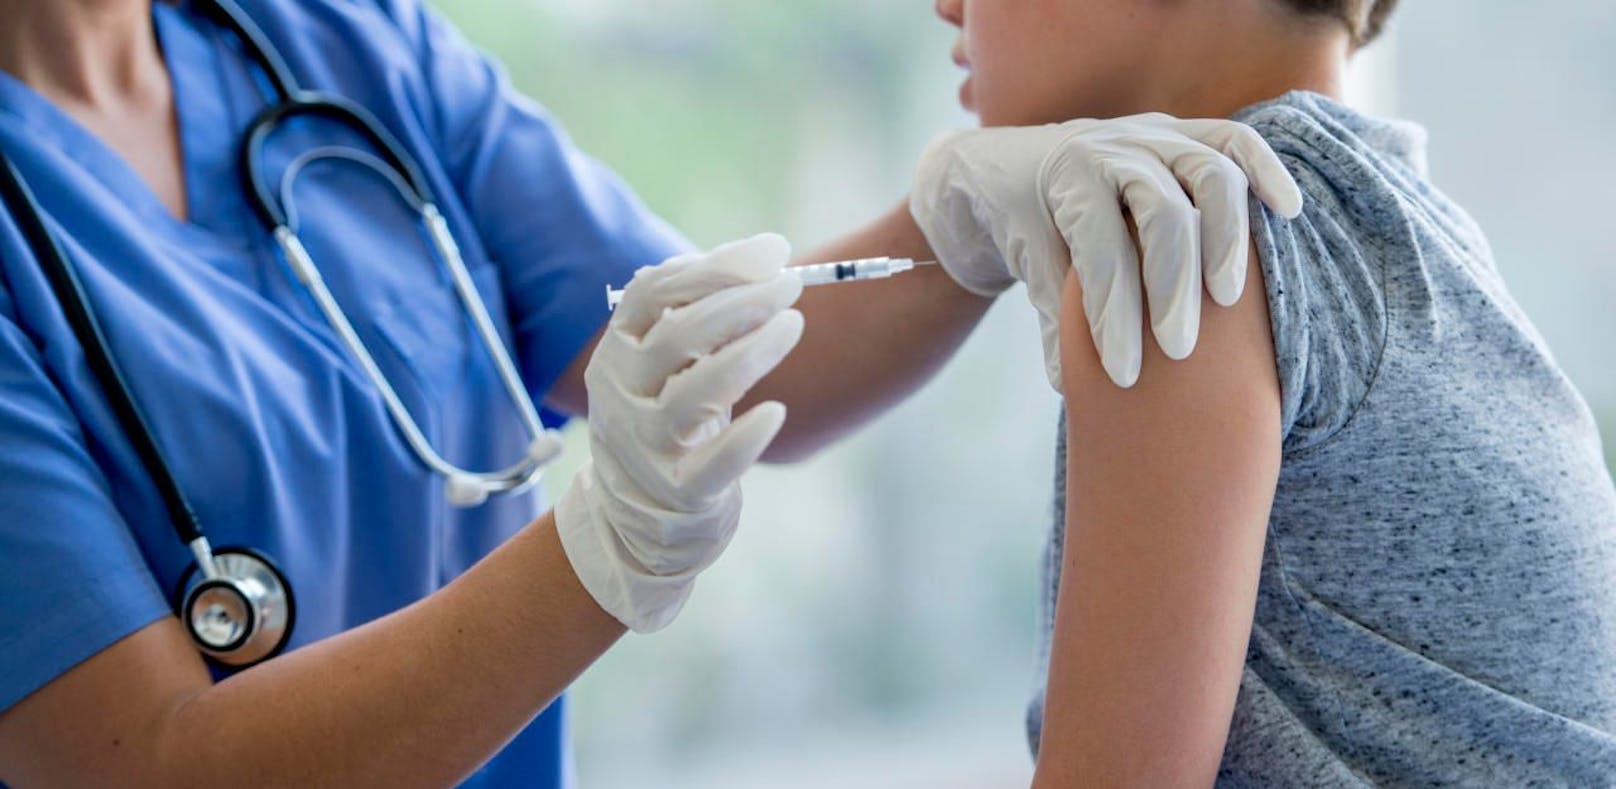 Italien hat eine neue Impfpflicht erlassen, die zum Teil harte Sanktionen androht. (Symbolbild)